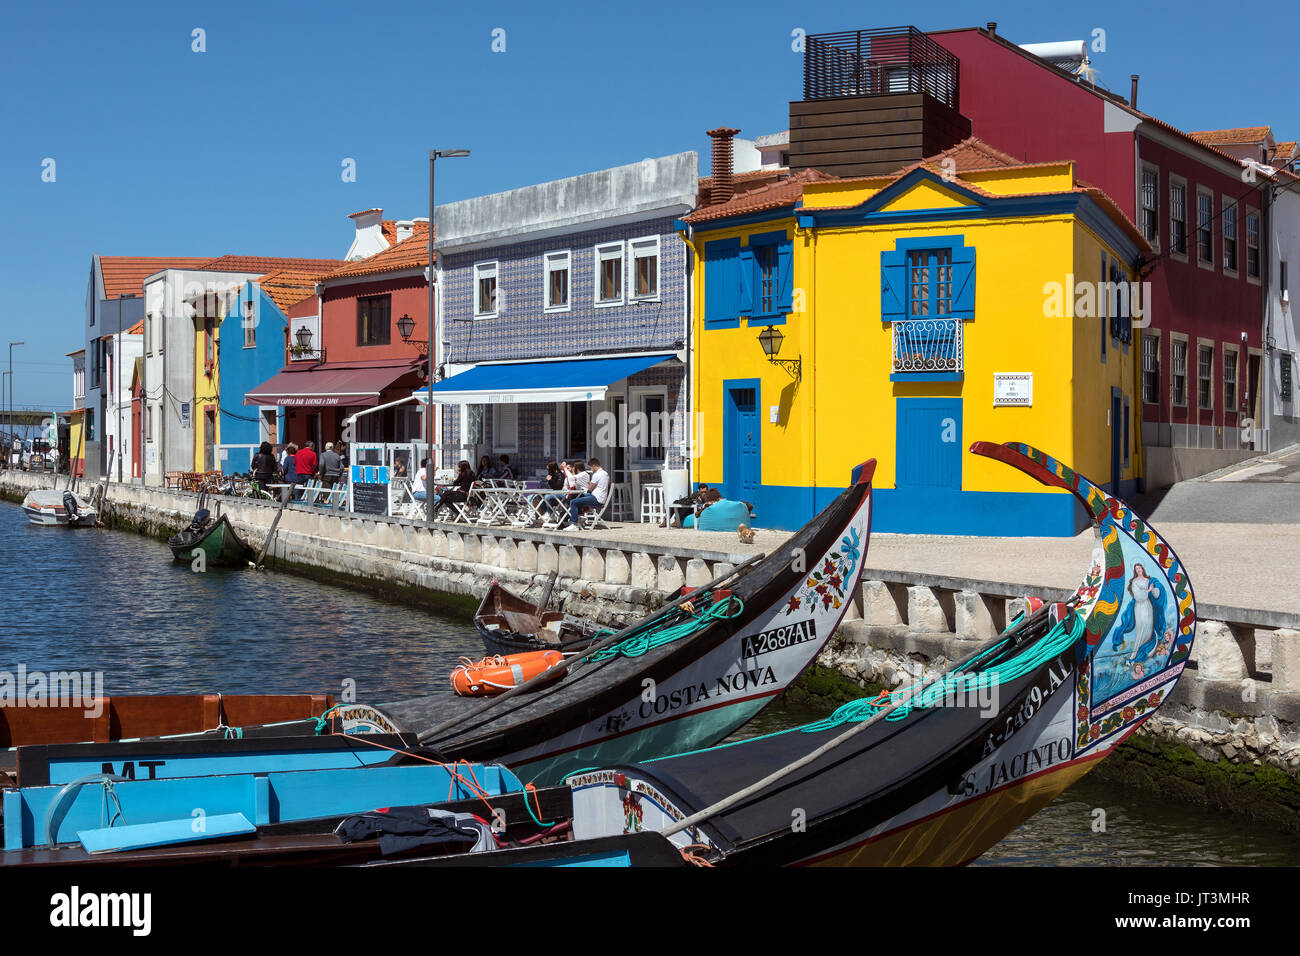 Le port d'Aveiro, connue comme la Venise du Portugal, est une destination touristique populaire dans la région Centre du Portugal. Banque D'Images